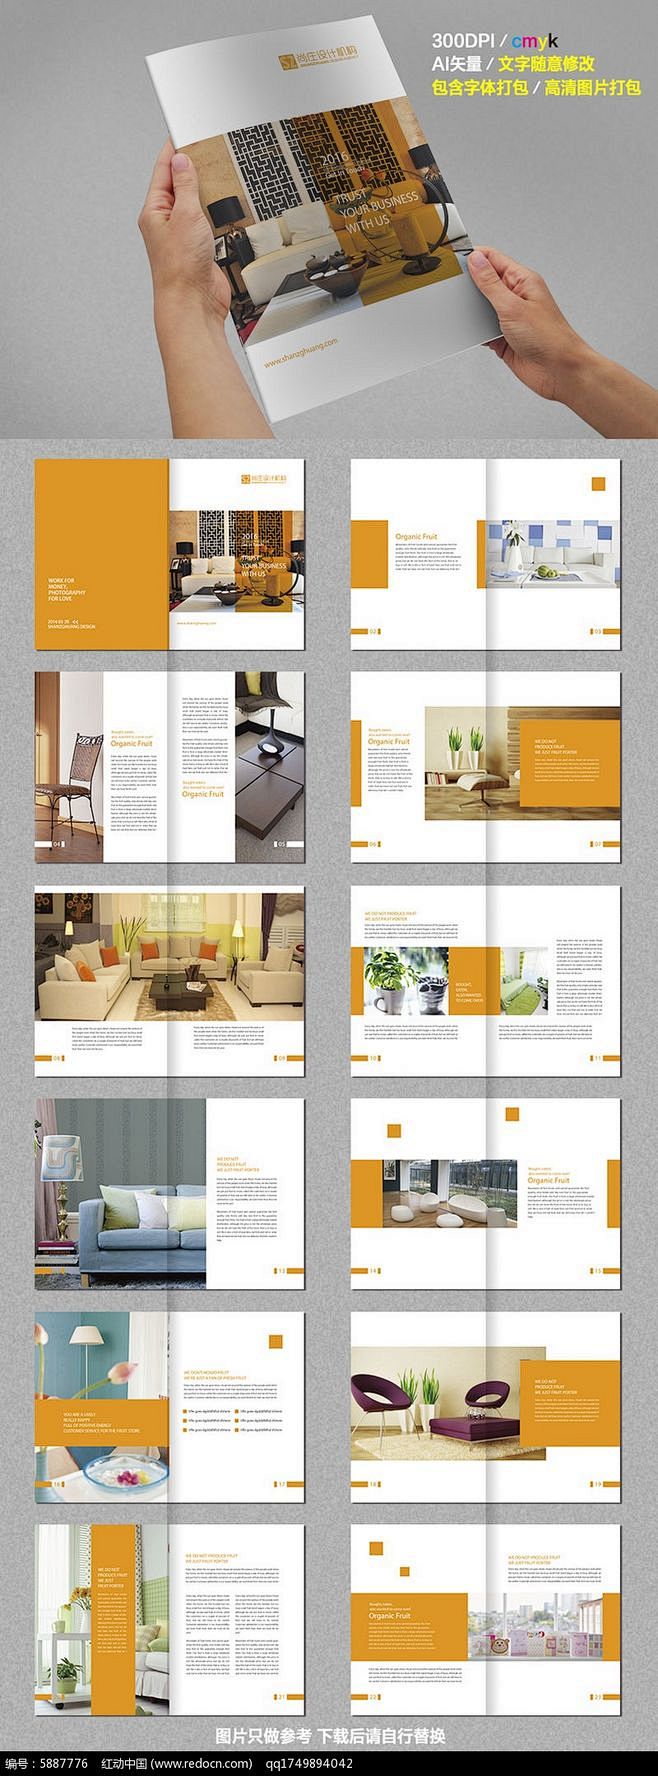 家具产品画册设计AI素材下载_产品画册设...